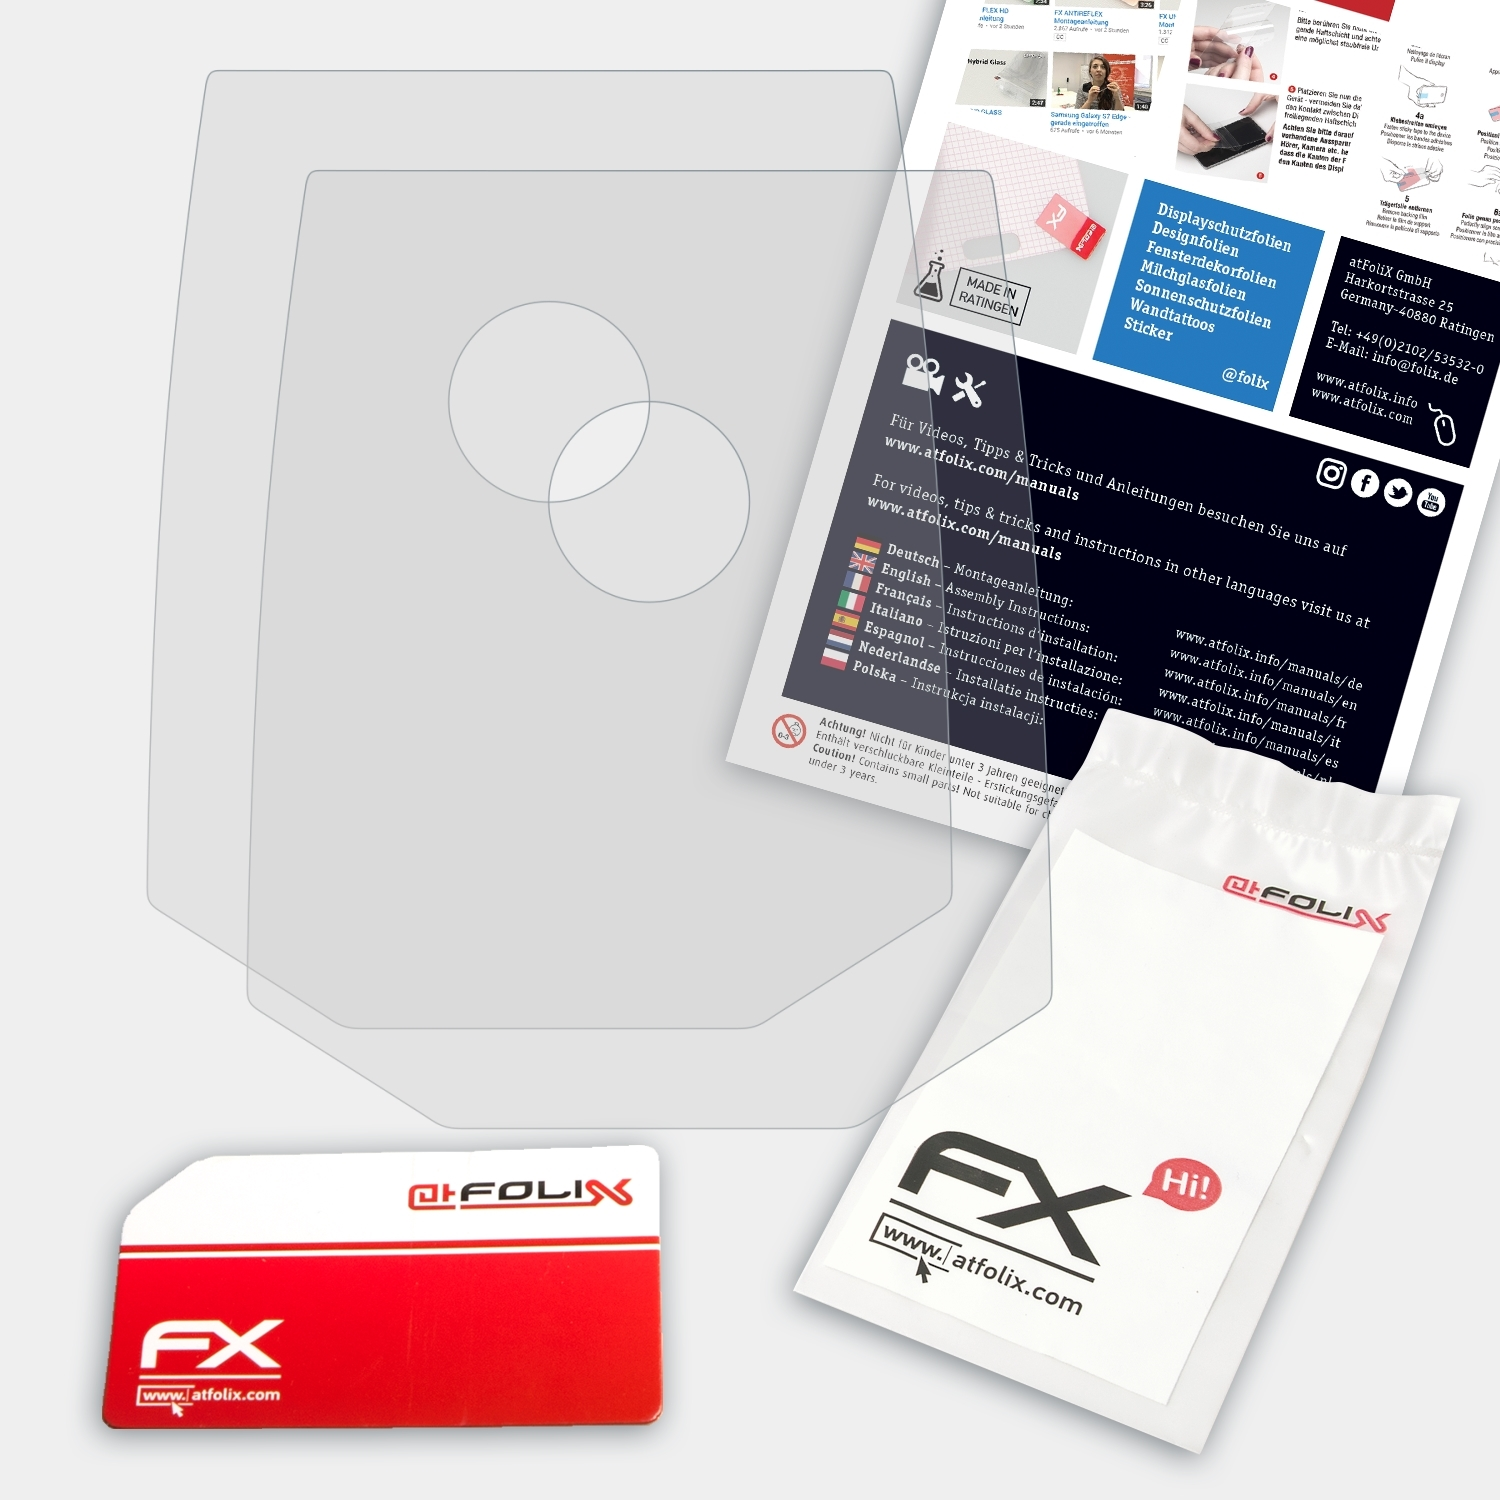 ATFOLIX 2x FX-Antireflex Displayschutz(für GMS 120) Bosch